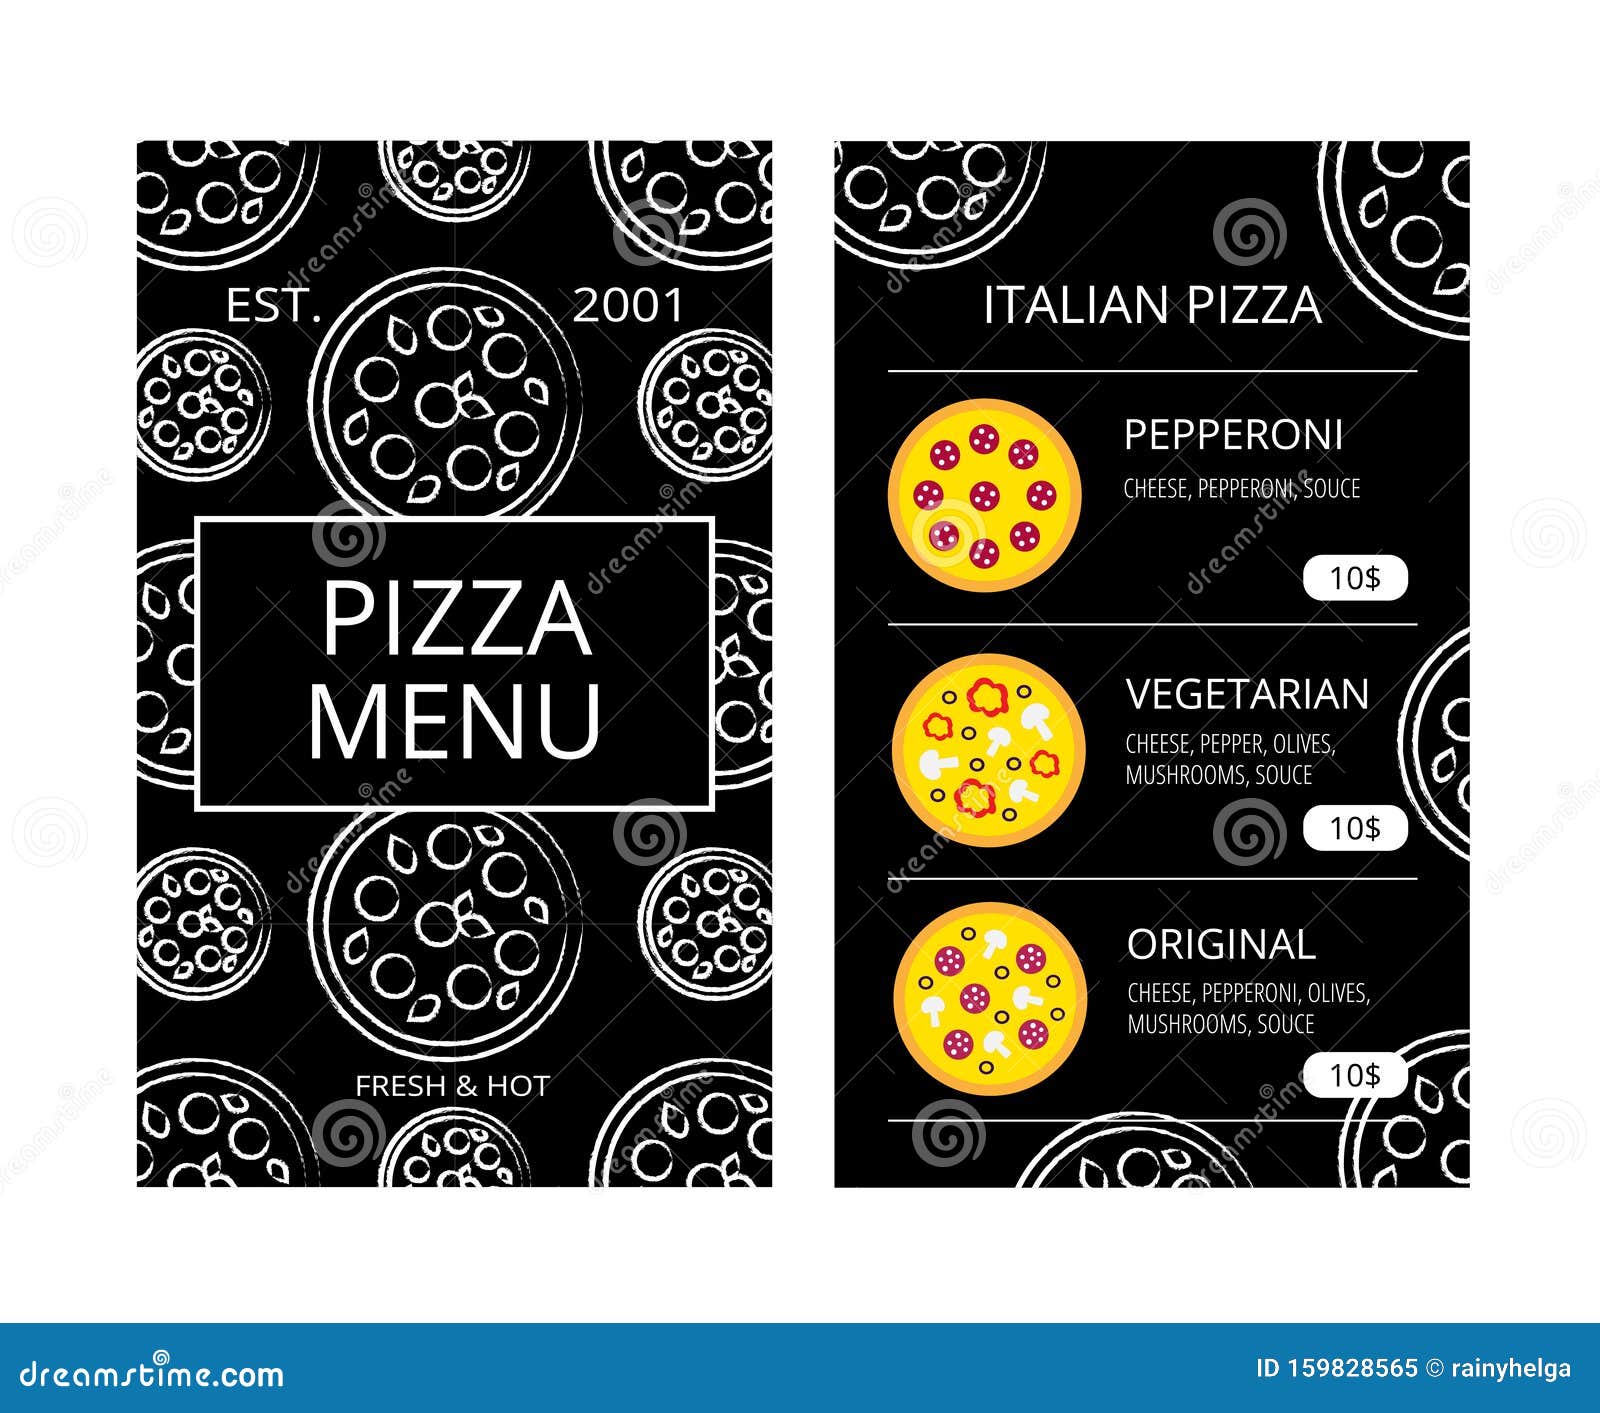 технологические карты для пиццы пепперони фото 107